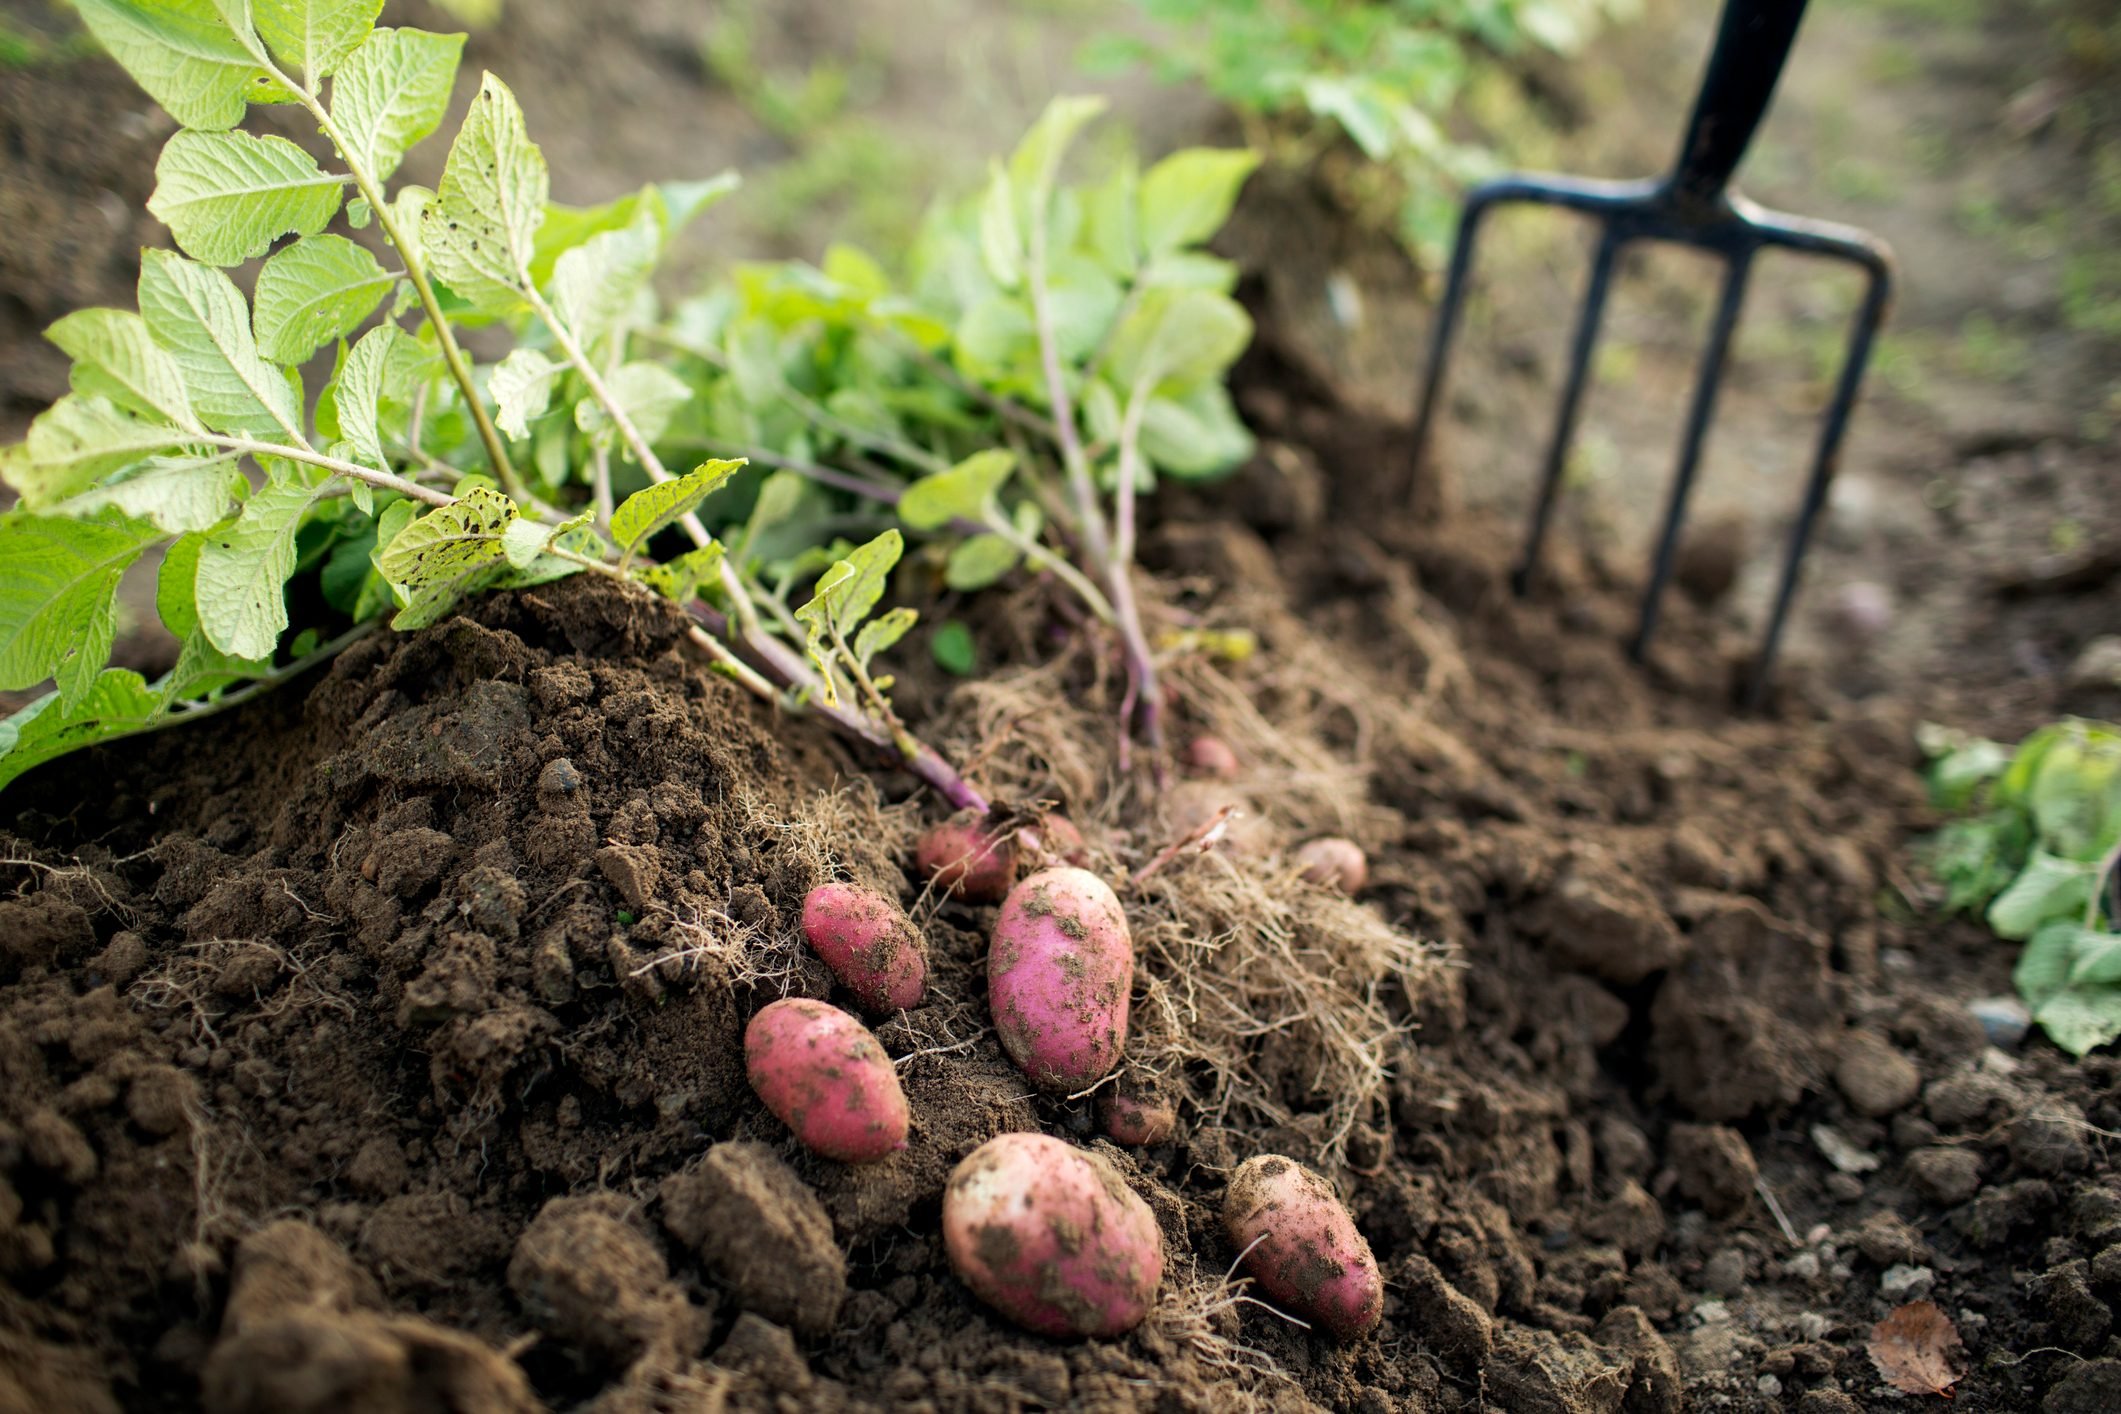 how to grow Potatoes